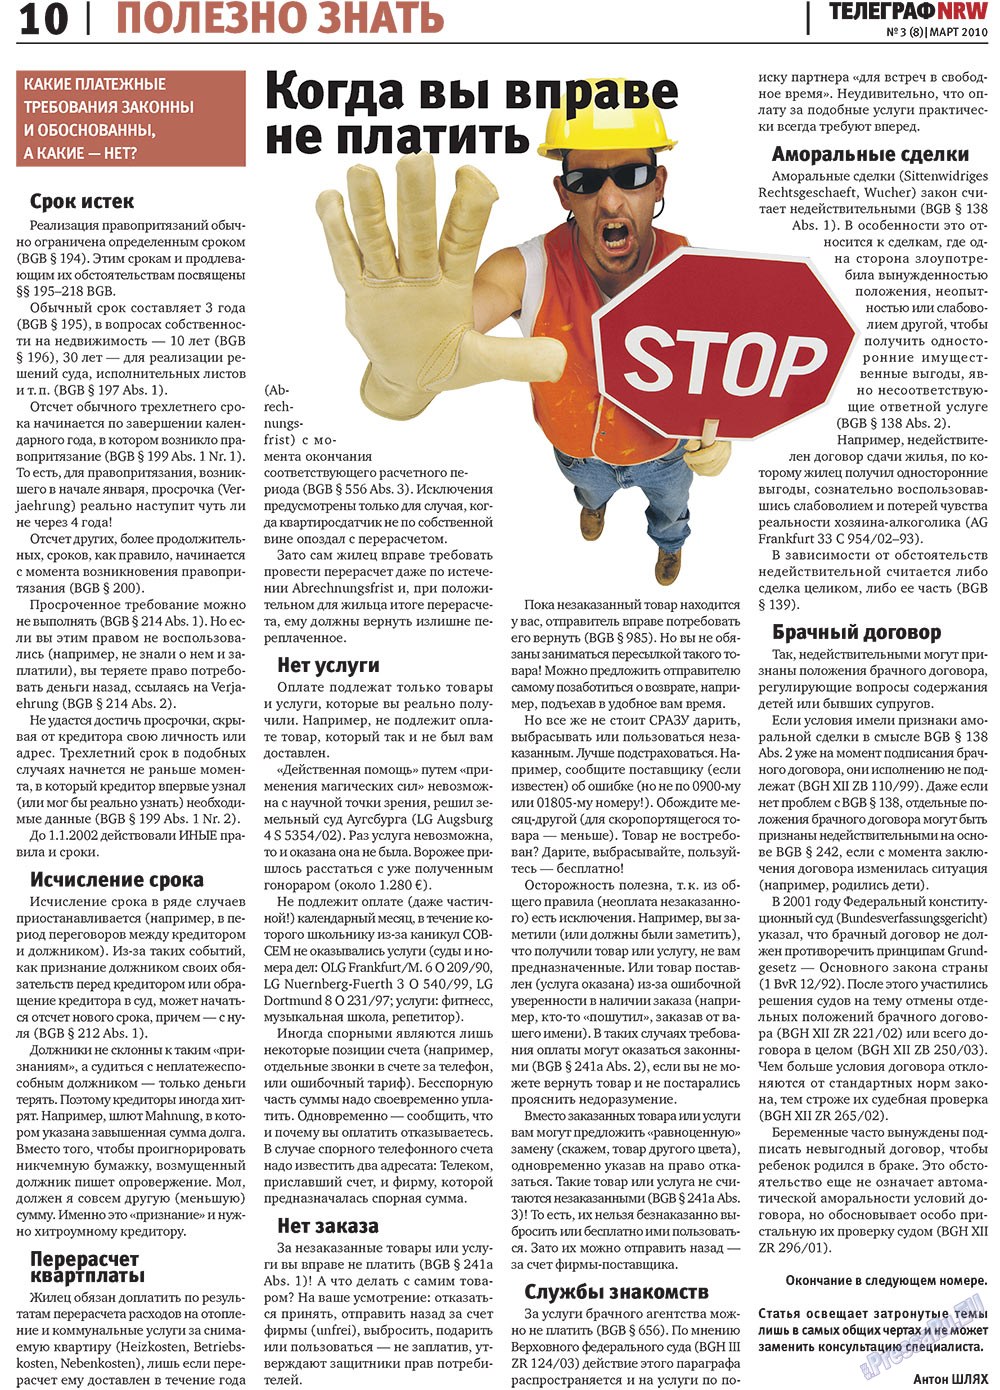 Телеграф NRW (газета). 2010 год, номер 3, стр. 10